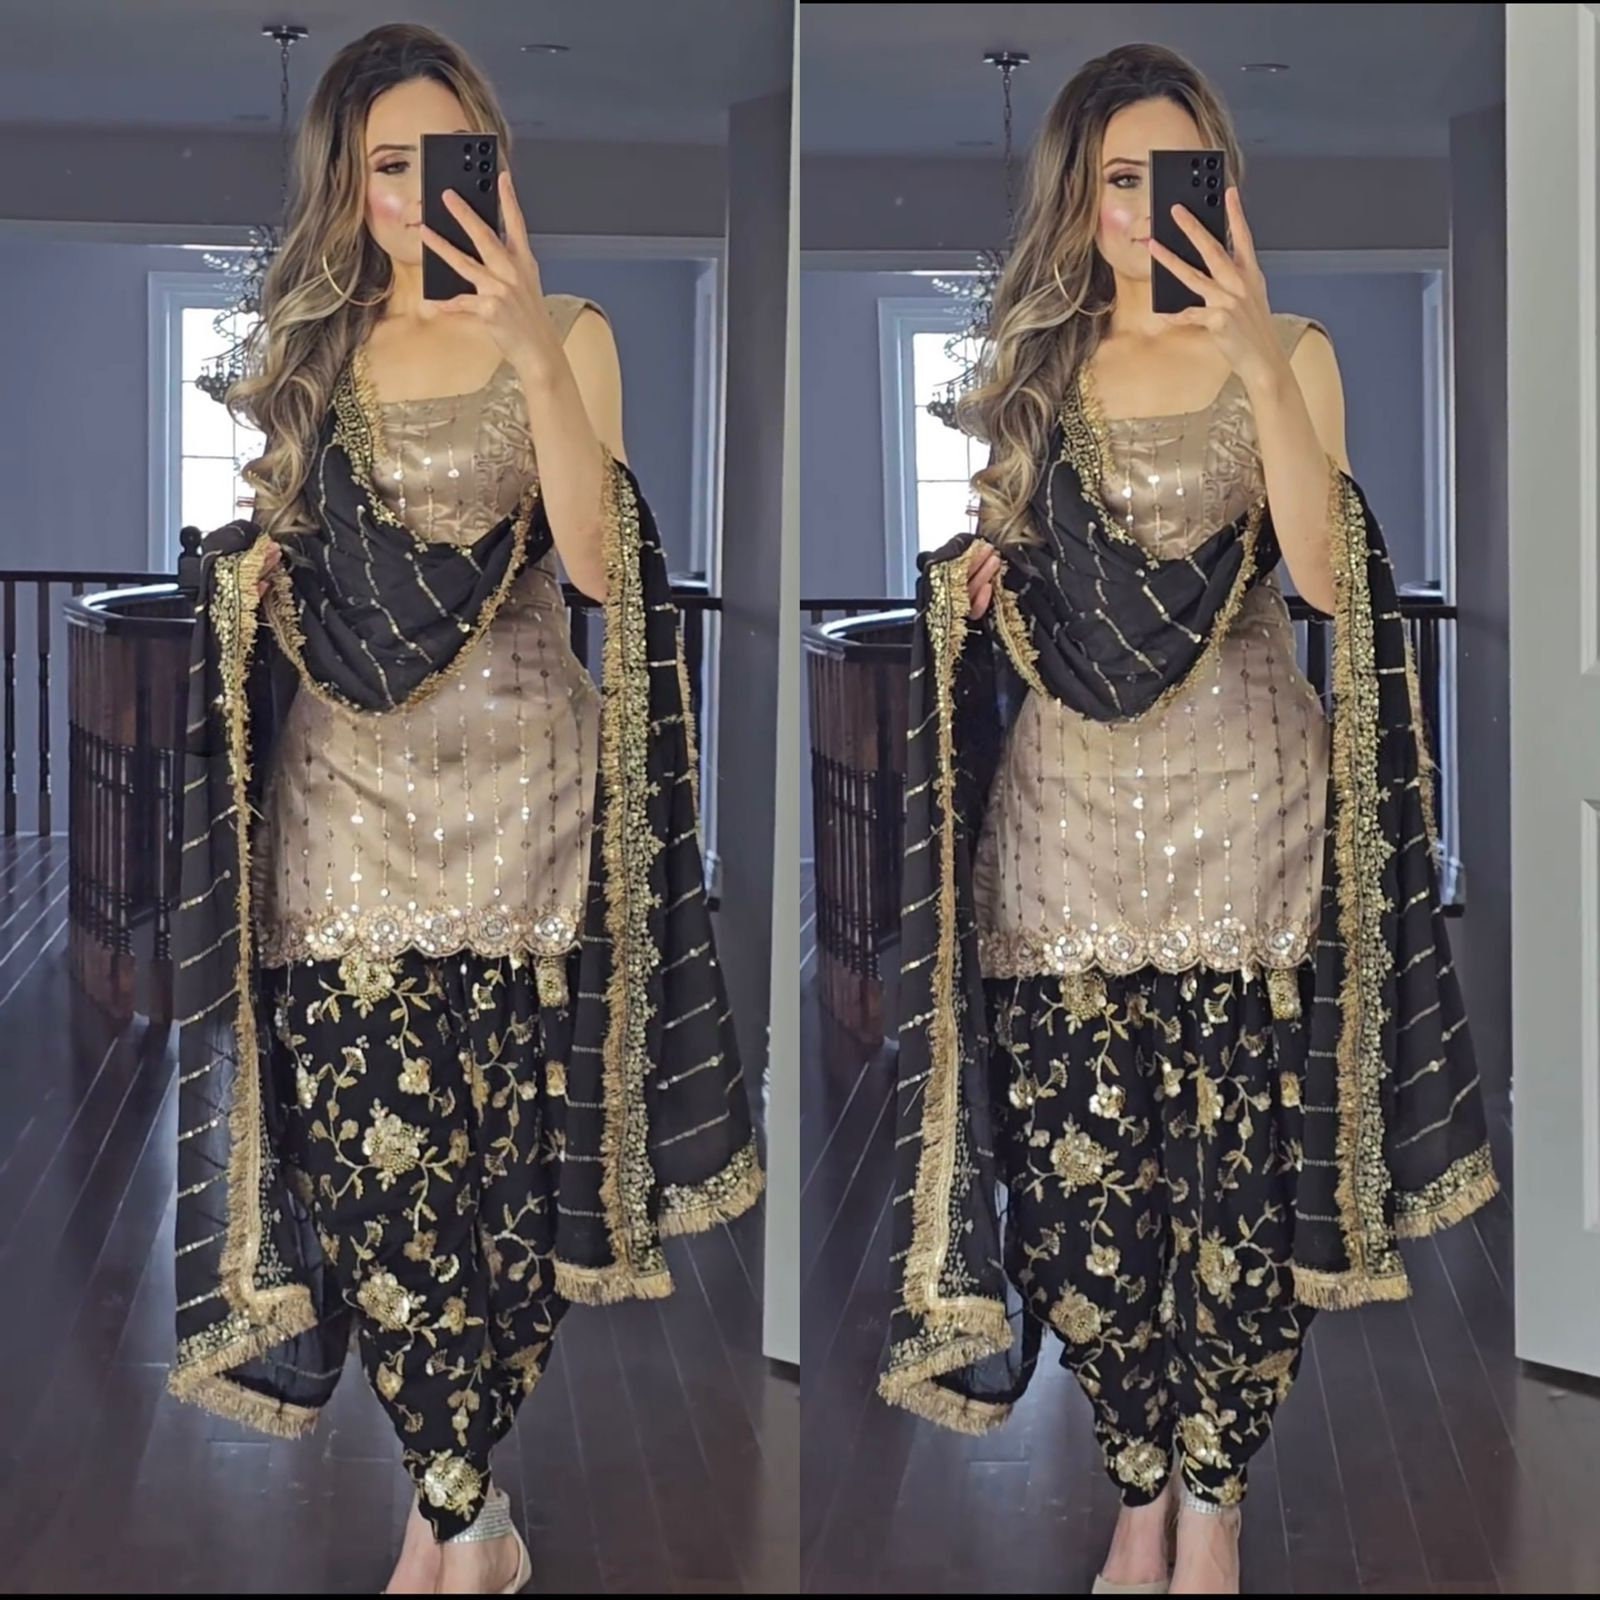 Bollywood Actress backless suit design sara ali khan, alia bhatt, deepika  padukone and kiara advani| Bollywood Actress Backless Dress: इंडियन लुक में  भी दिखना चाहती हैं टिप-टॉप, इन एक्ट्रेस से लें ...